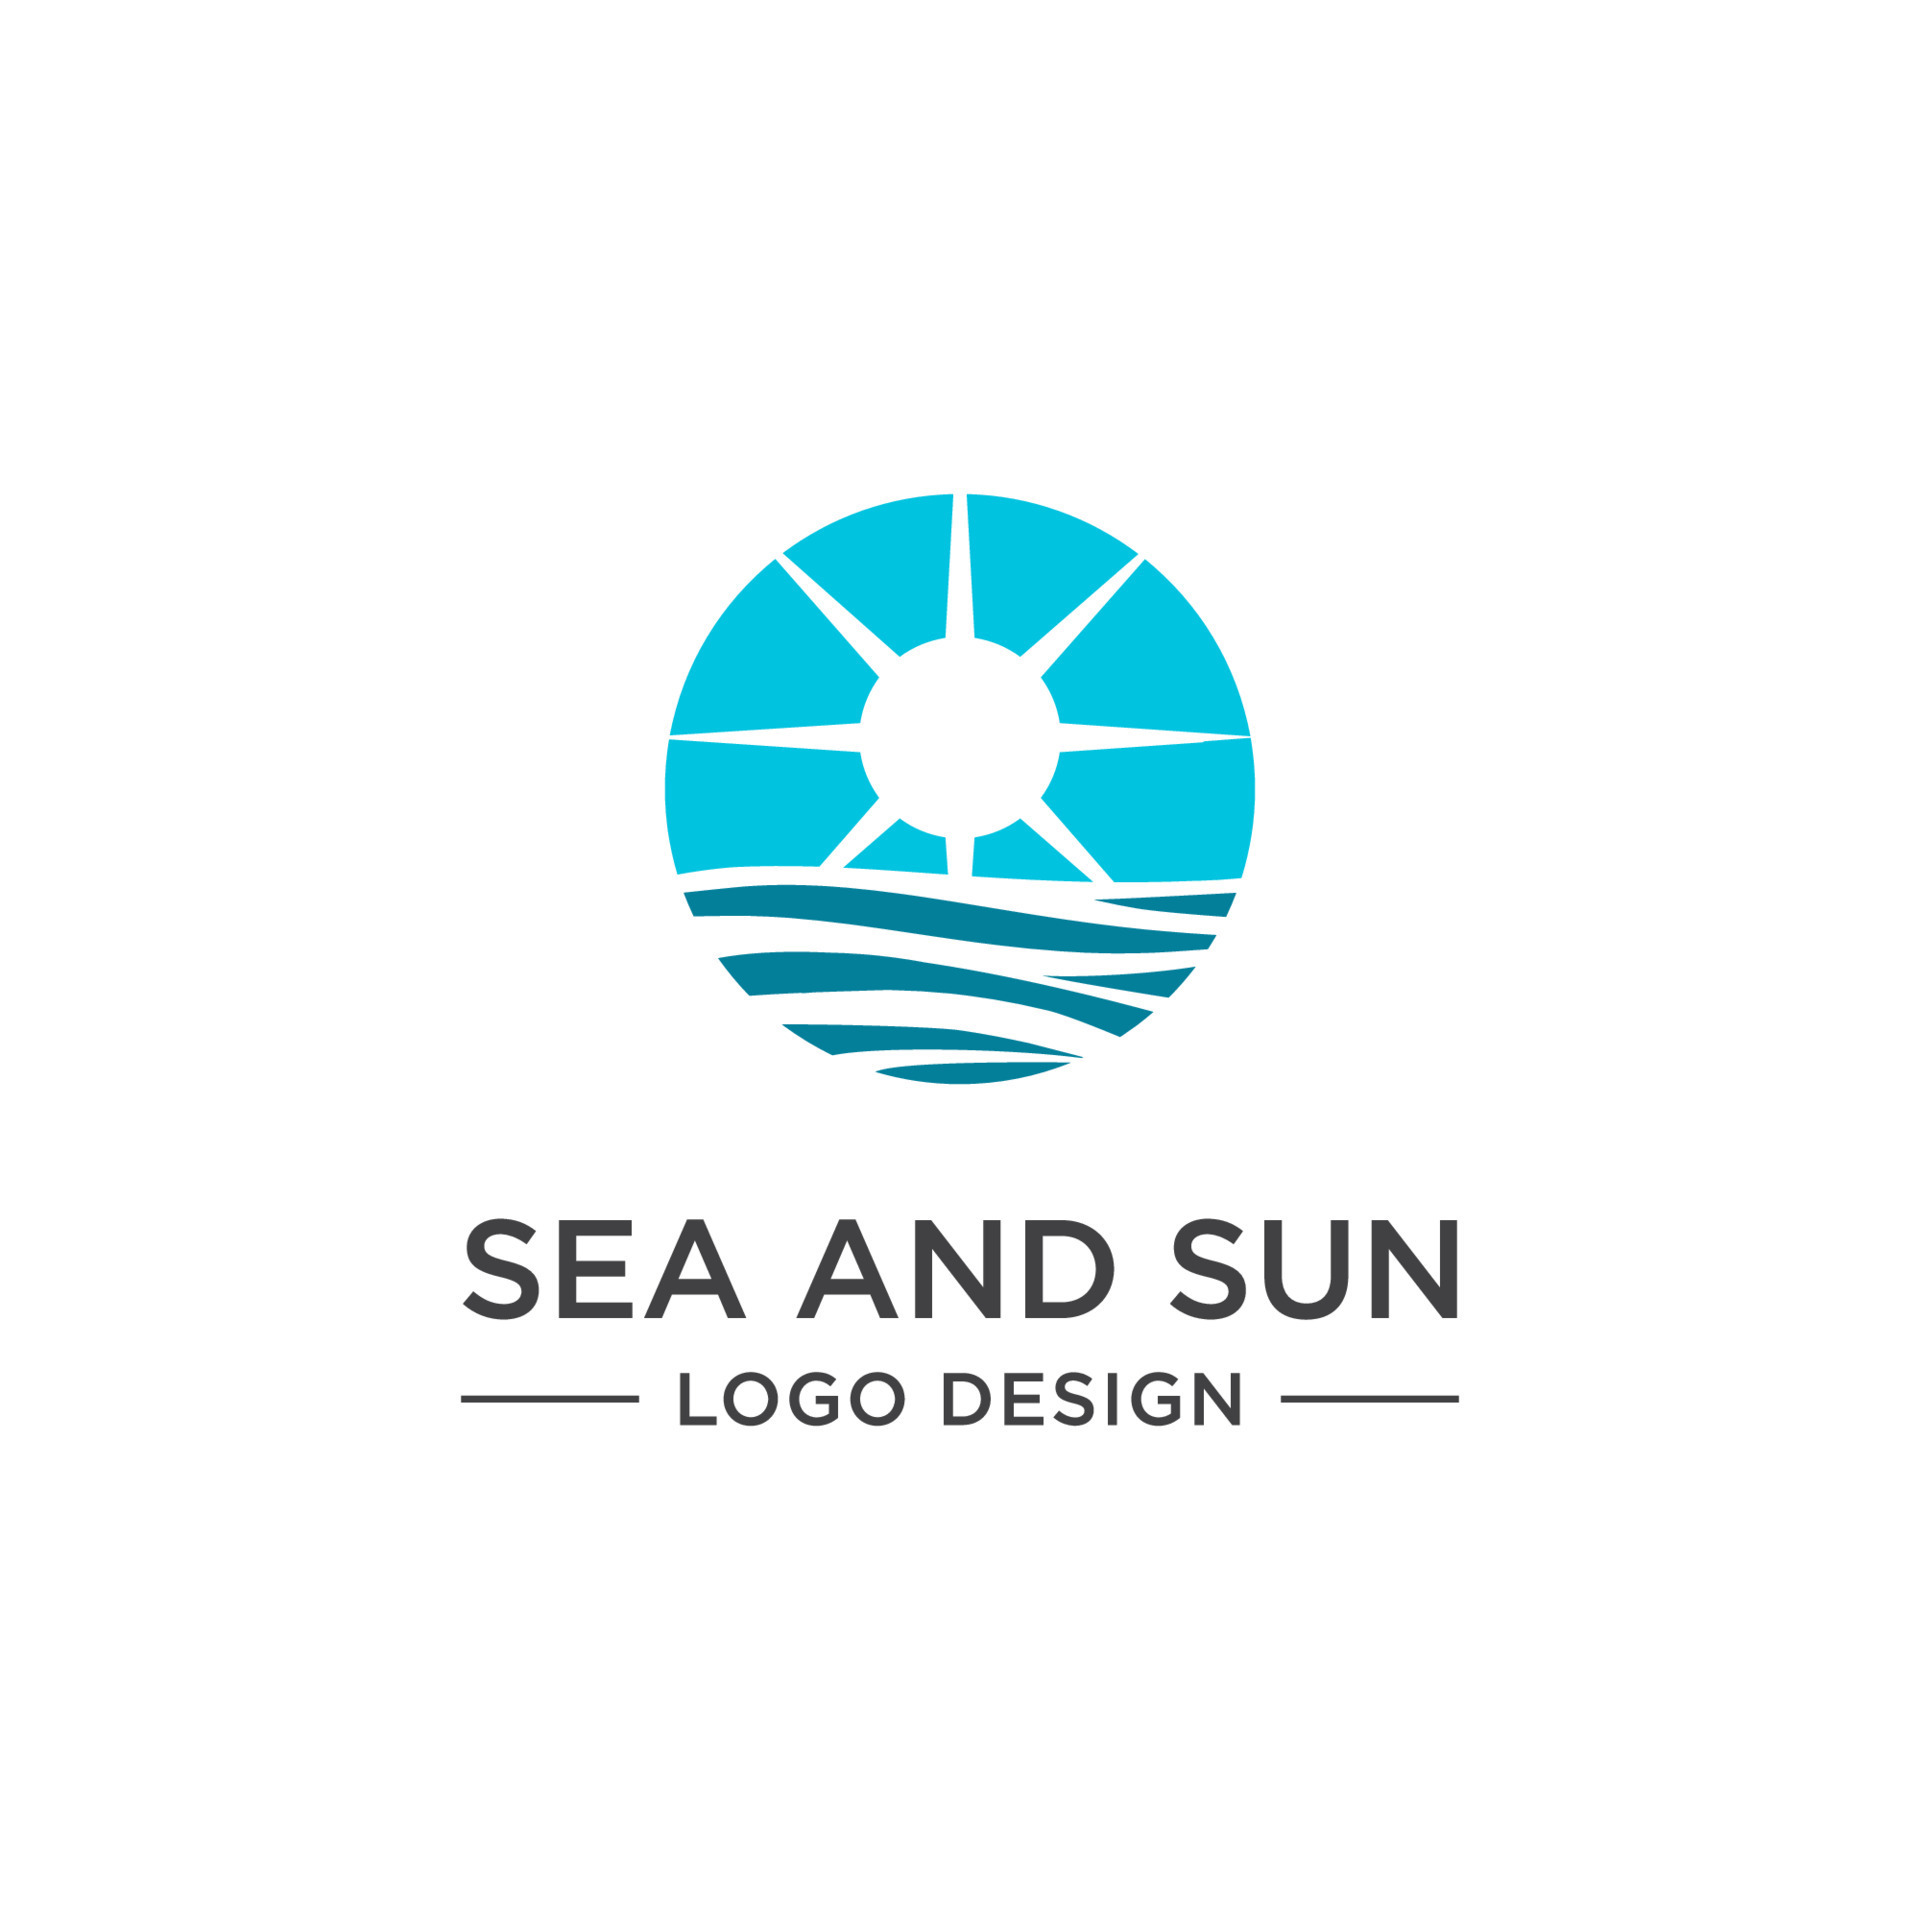 SEA AND SUN LOGO DESIGN 7400097 Vector Art at Vecteezy